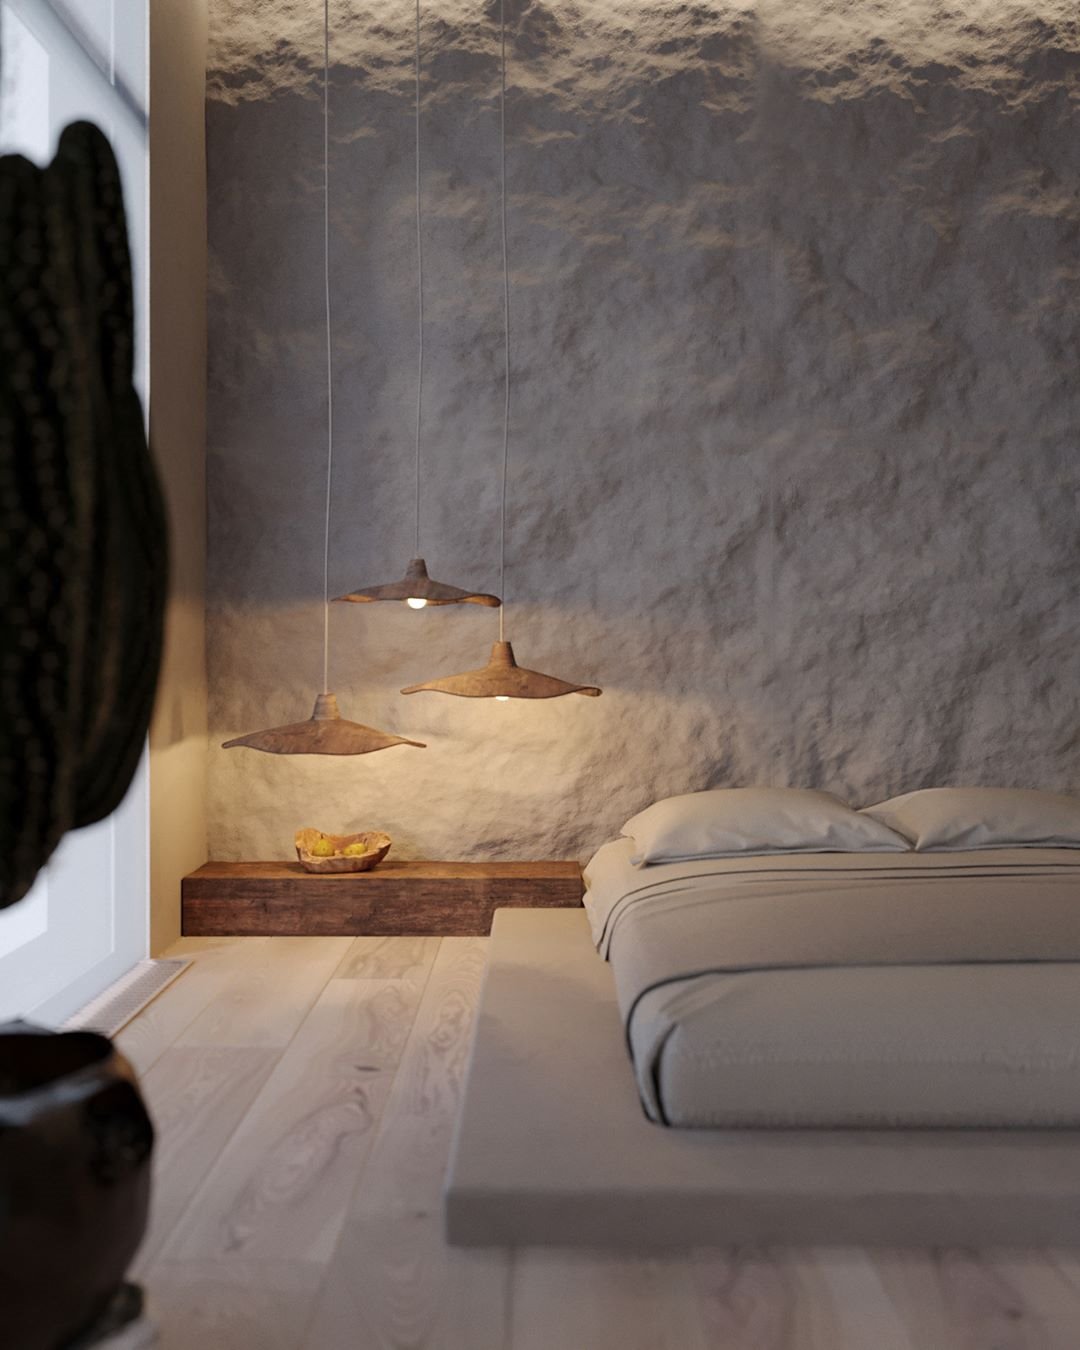 Dormitorio con paredes rugosas y lamparas suspendidas